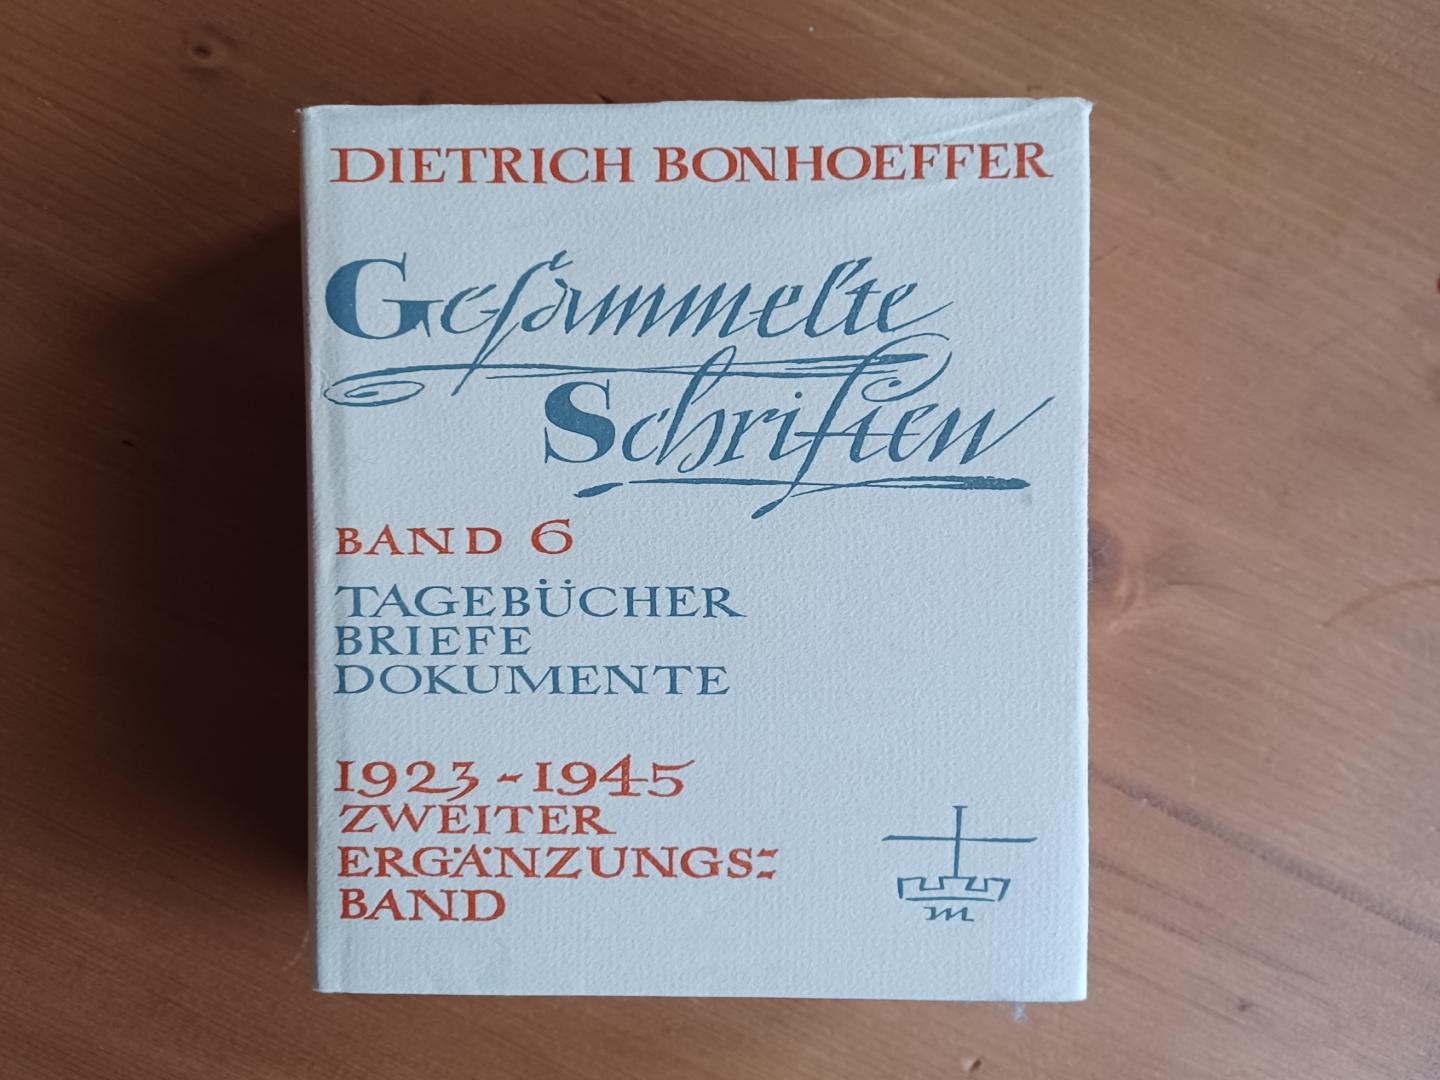 Bonhoeffer, Dietrich / Bethge, Eberhard - Gesämmelte Schriften Band 6 Tagebücher, Briefe, Dokumente